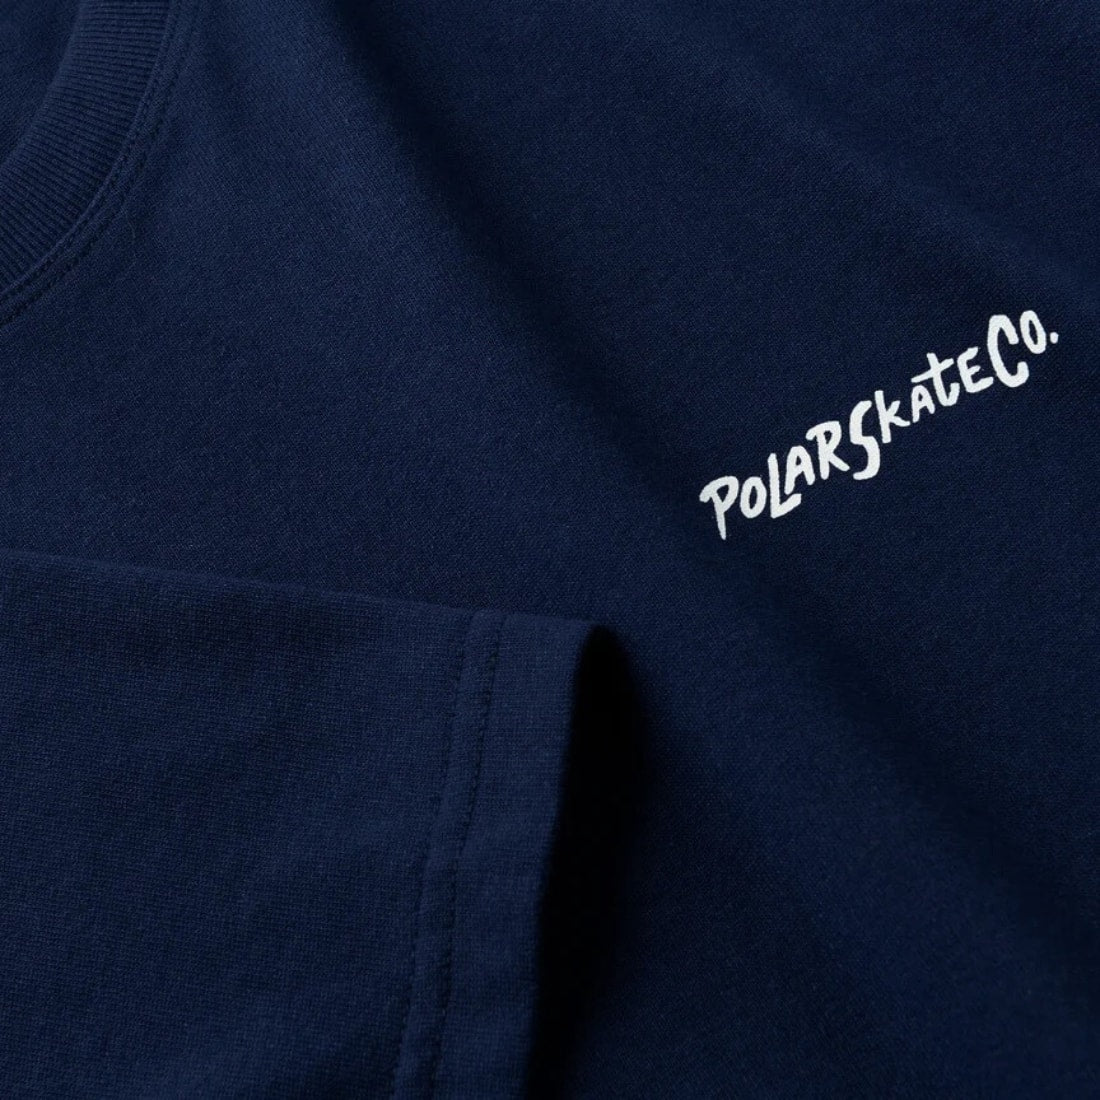 Polar 12 Faces T-Shirt - Dark Blue - Mens Graphic T-Shirt by Polar